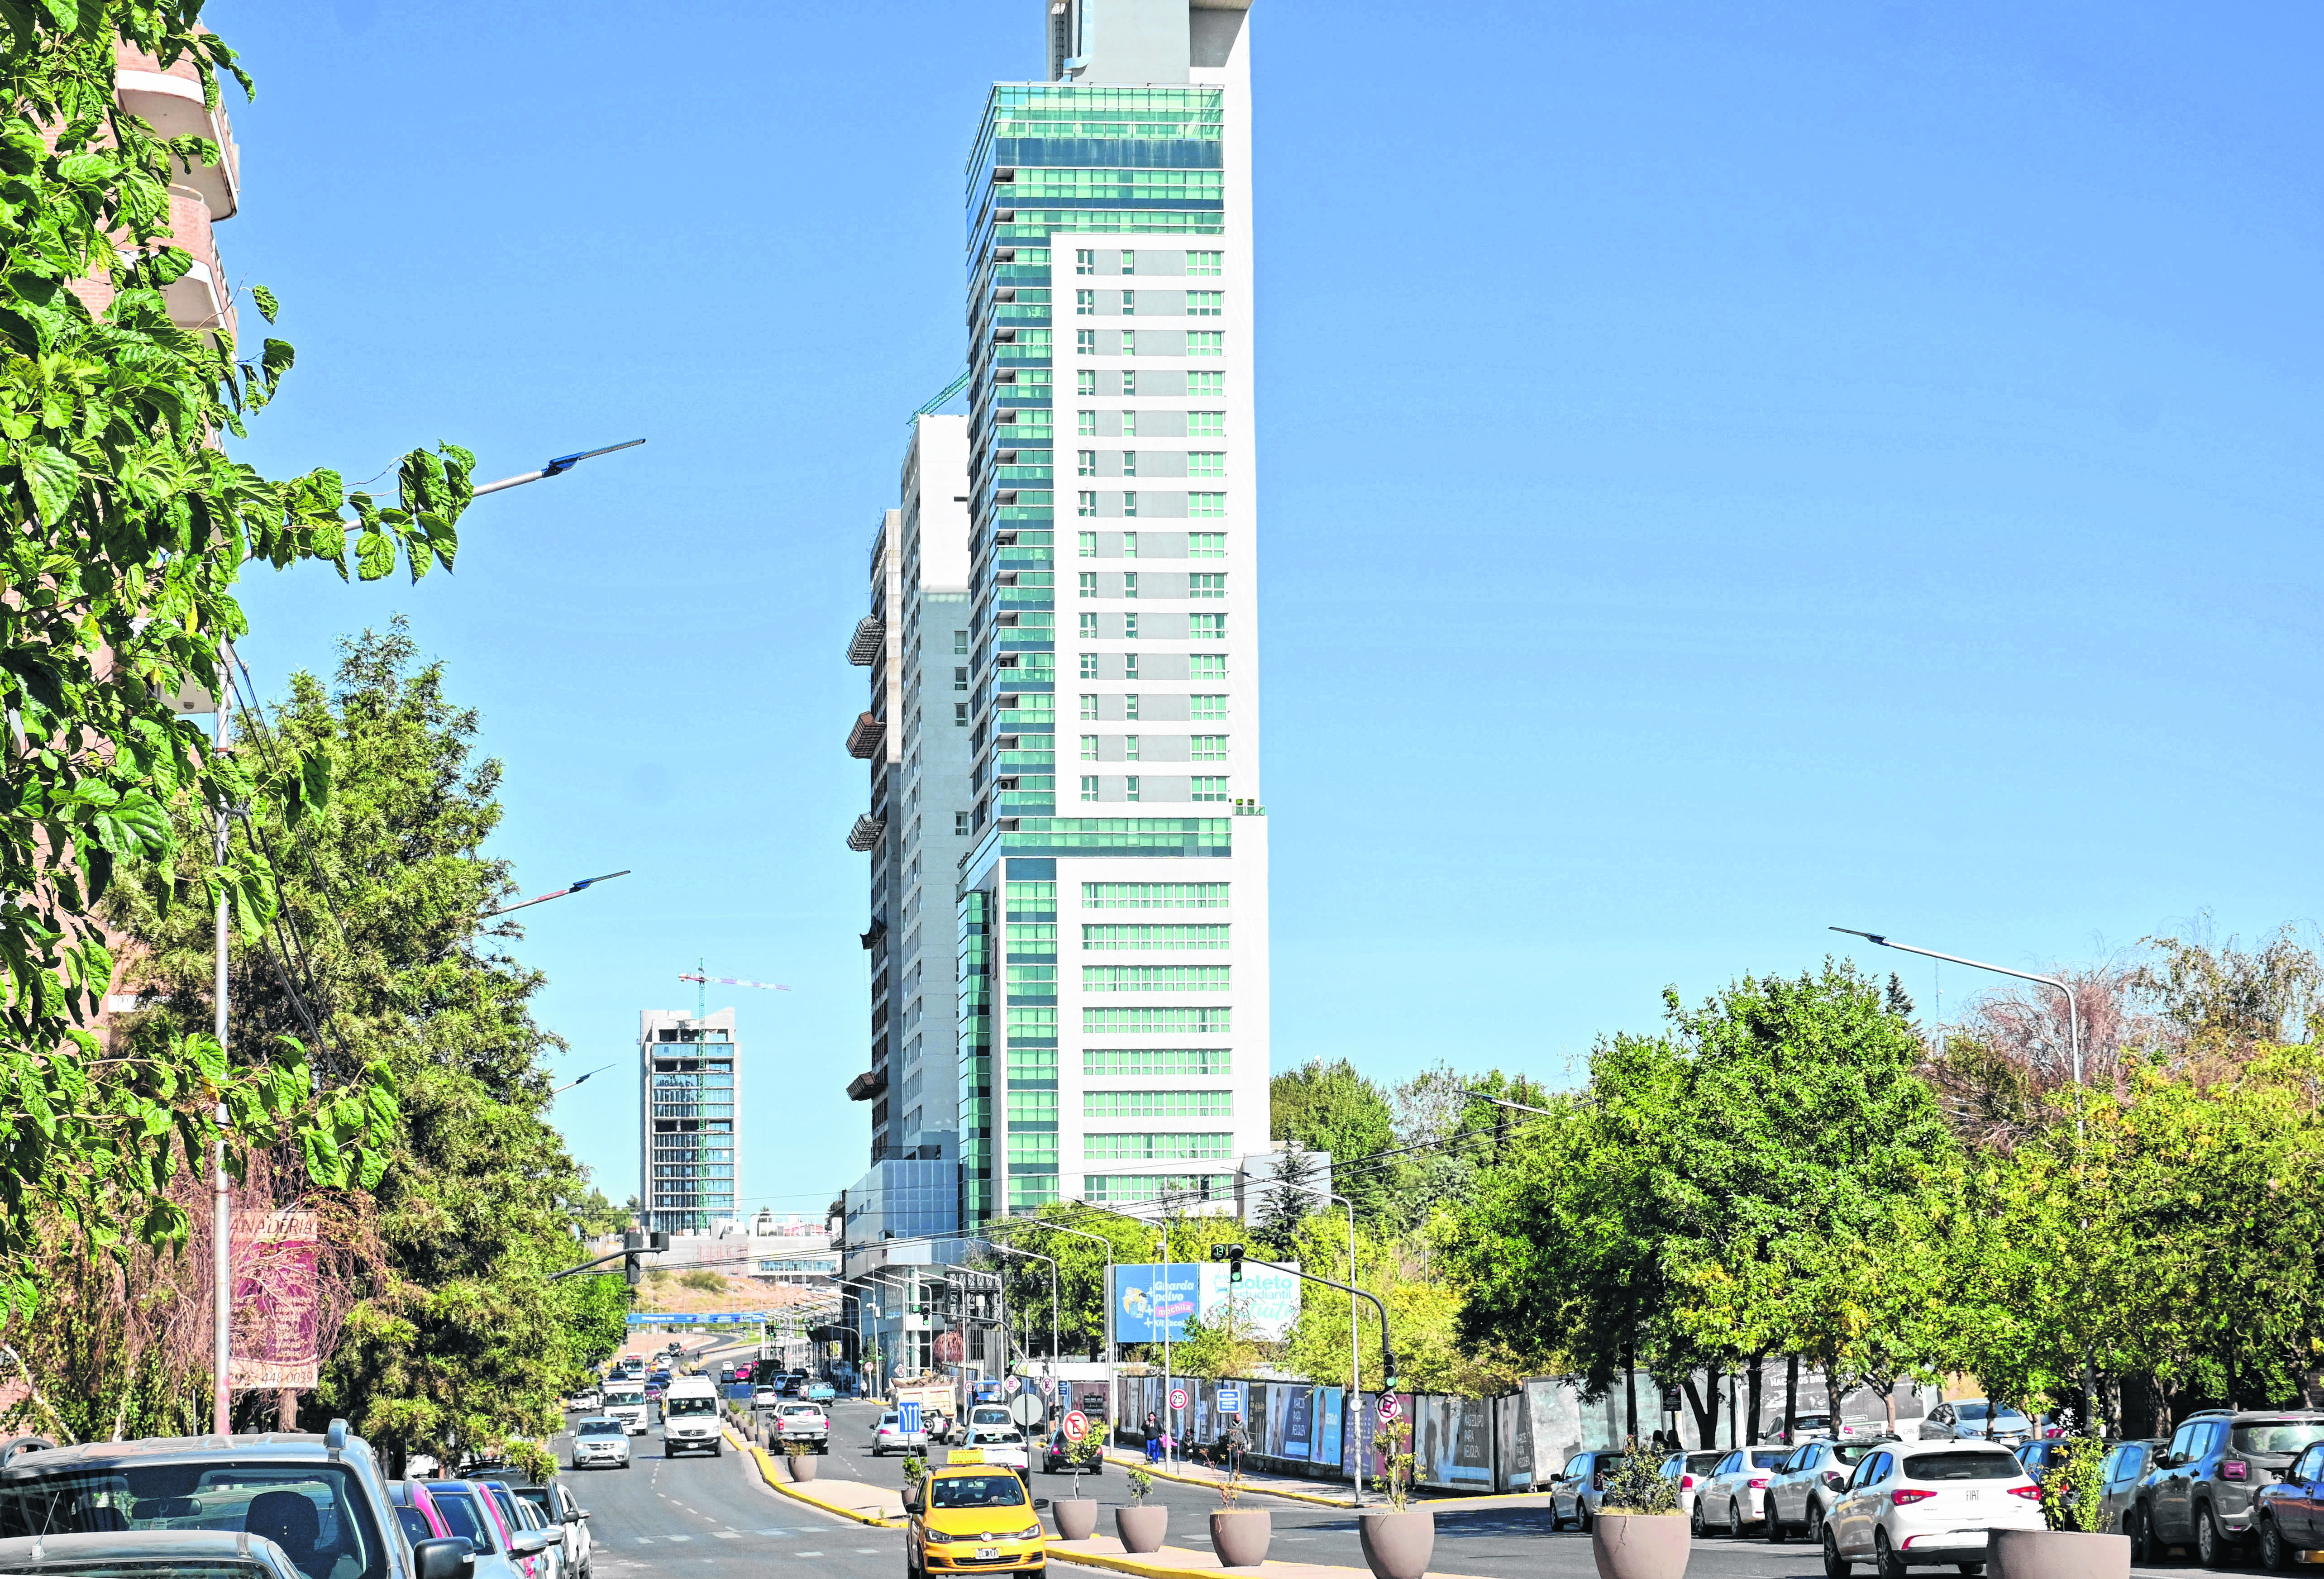 La avenida Leloir y su continuidad en Doctor Ramón albergan las inversiones en altura de mayores dimensiones en el alto de Neuquén y su valor inmobiliario es elevado en dólares.